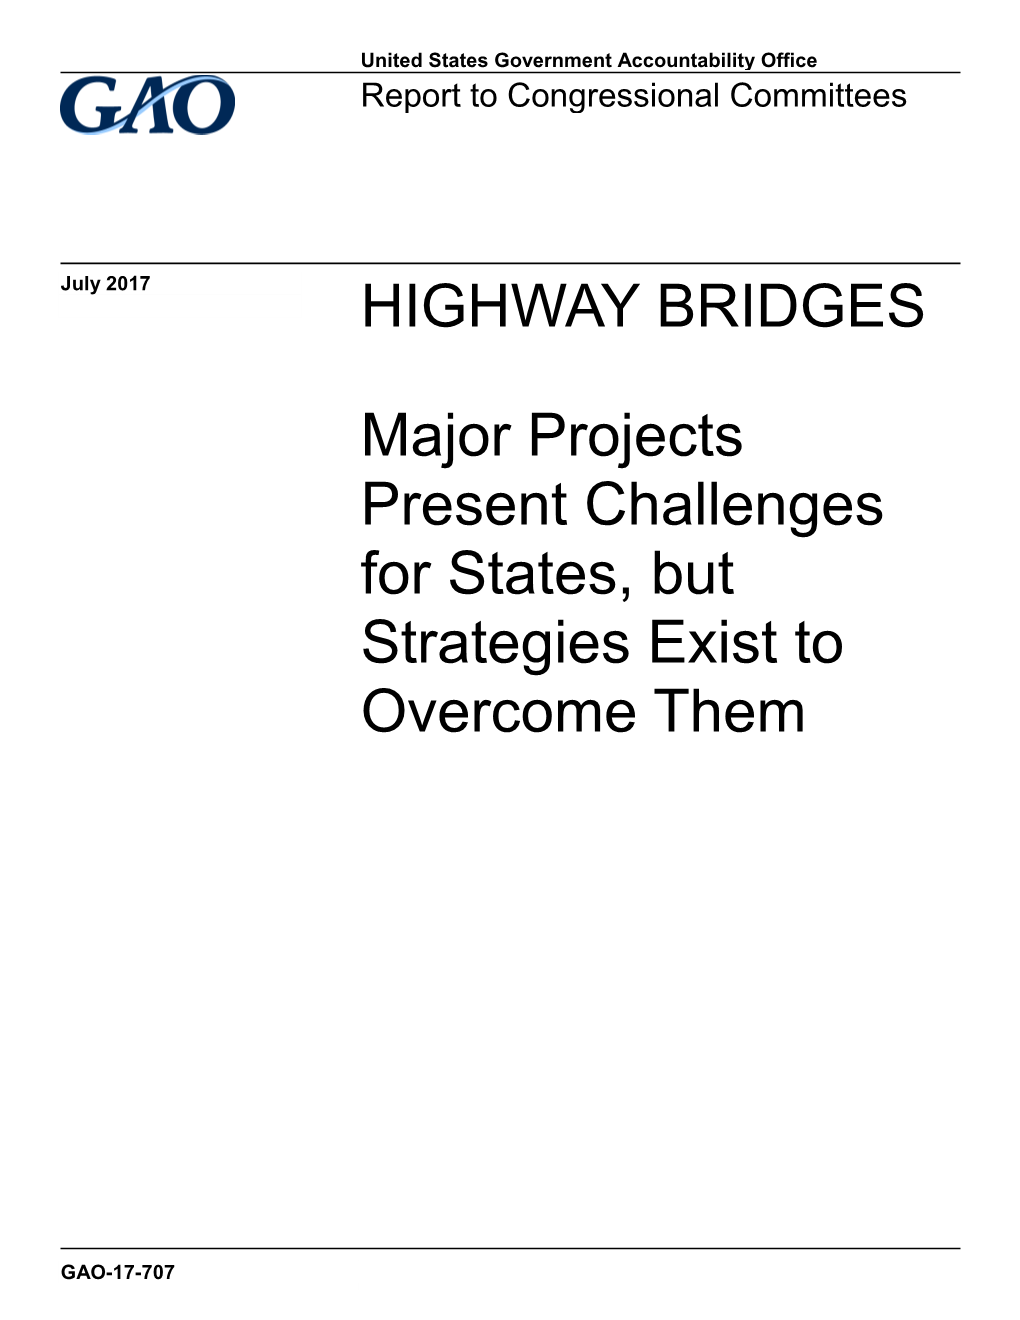 GAO-17-707, HIGHWAY BRIDGES: Major Projects Present Challenges